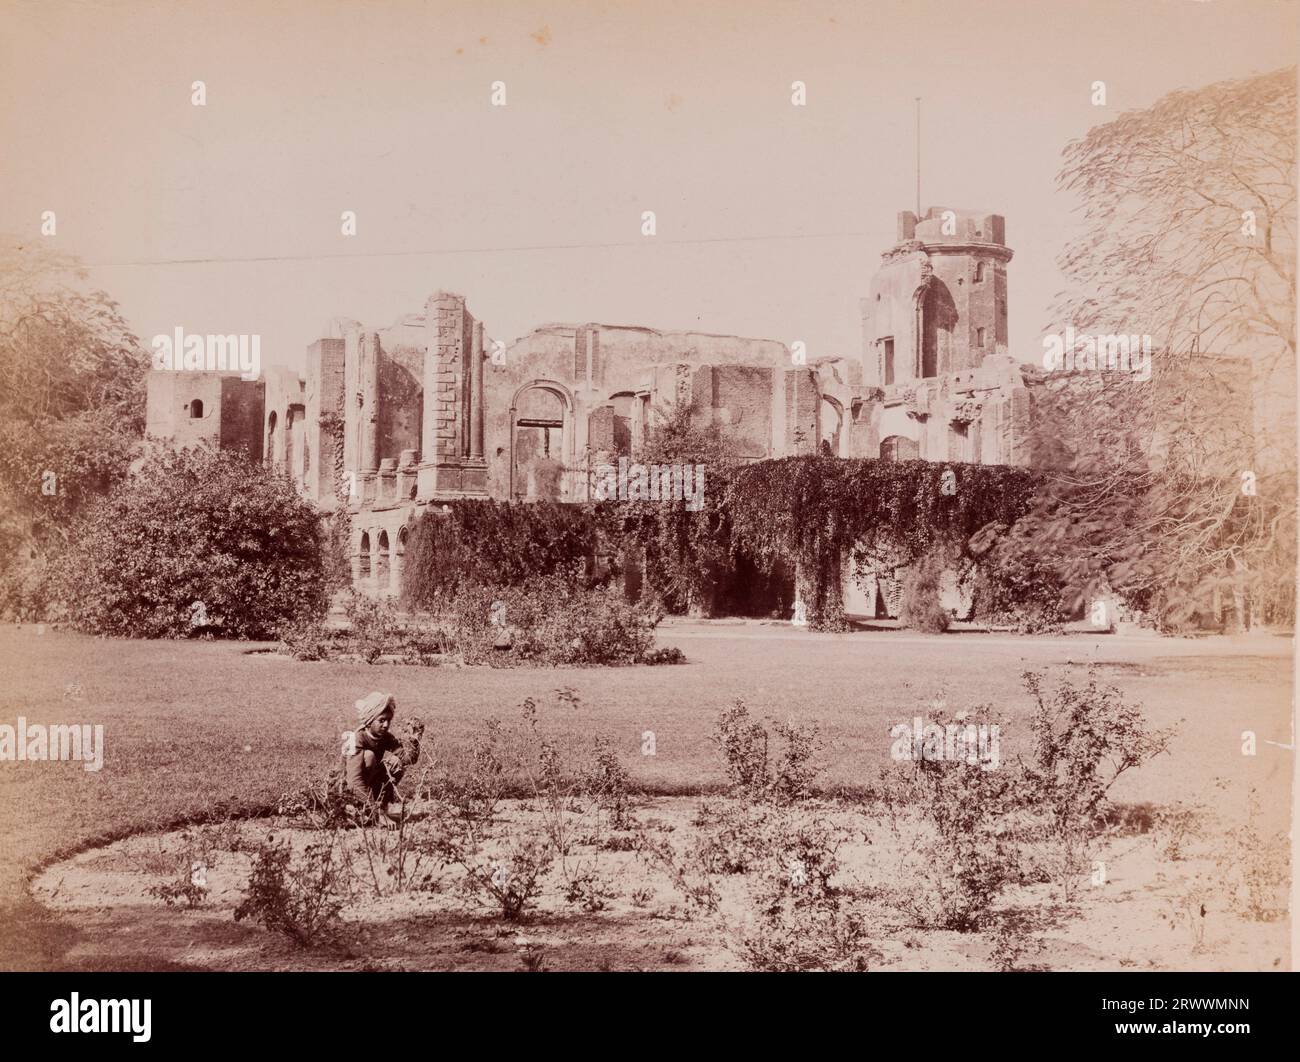 Vista delle rovine della residenza britannica con piante sovracoltivate. Fu rovinato durante la ribellione indiana del 1857. Ci sono giardini paesaggistici in primo piano e un giovane ragazzo indiano accovacciato da un letto di fiori. La didascalia recita: Lucknow Residency. Foto Stock